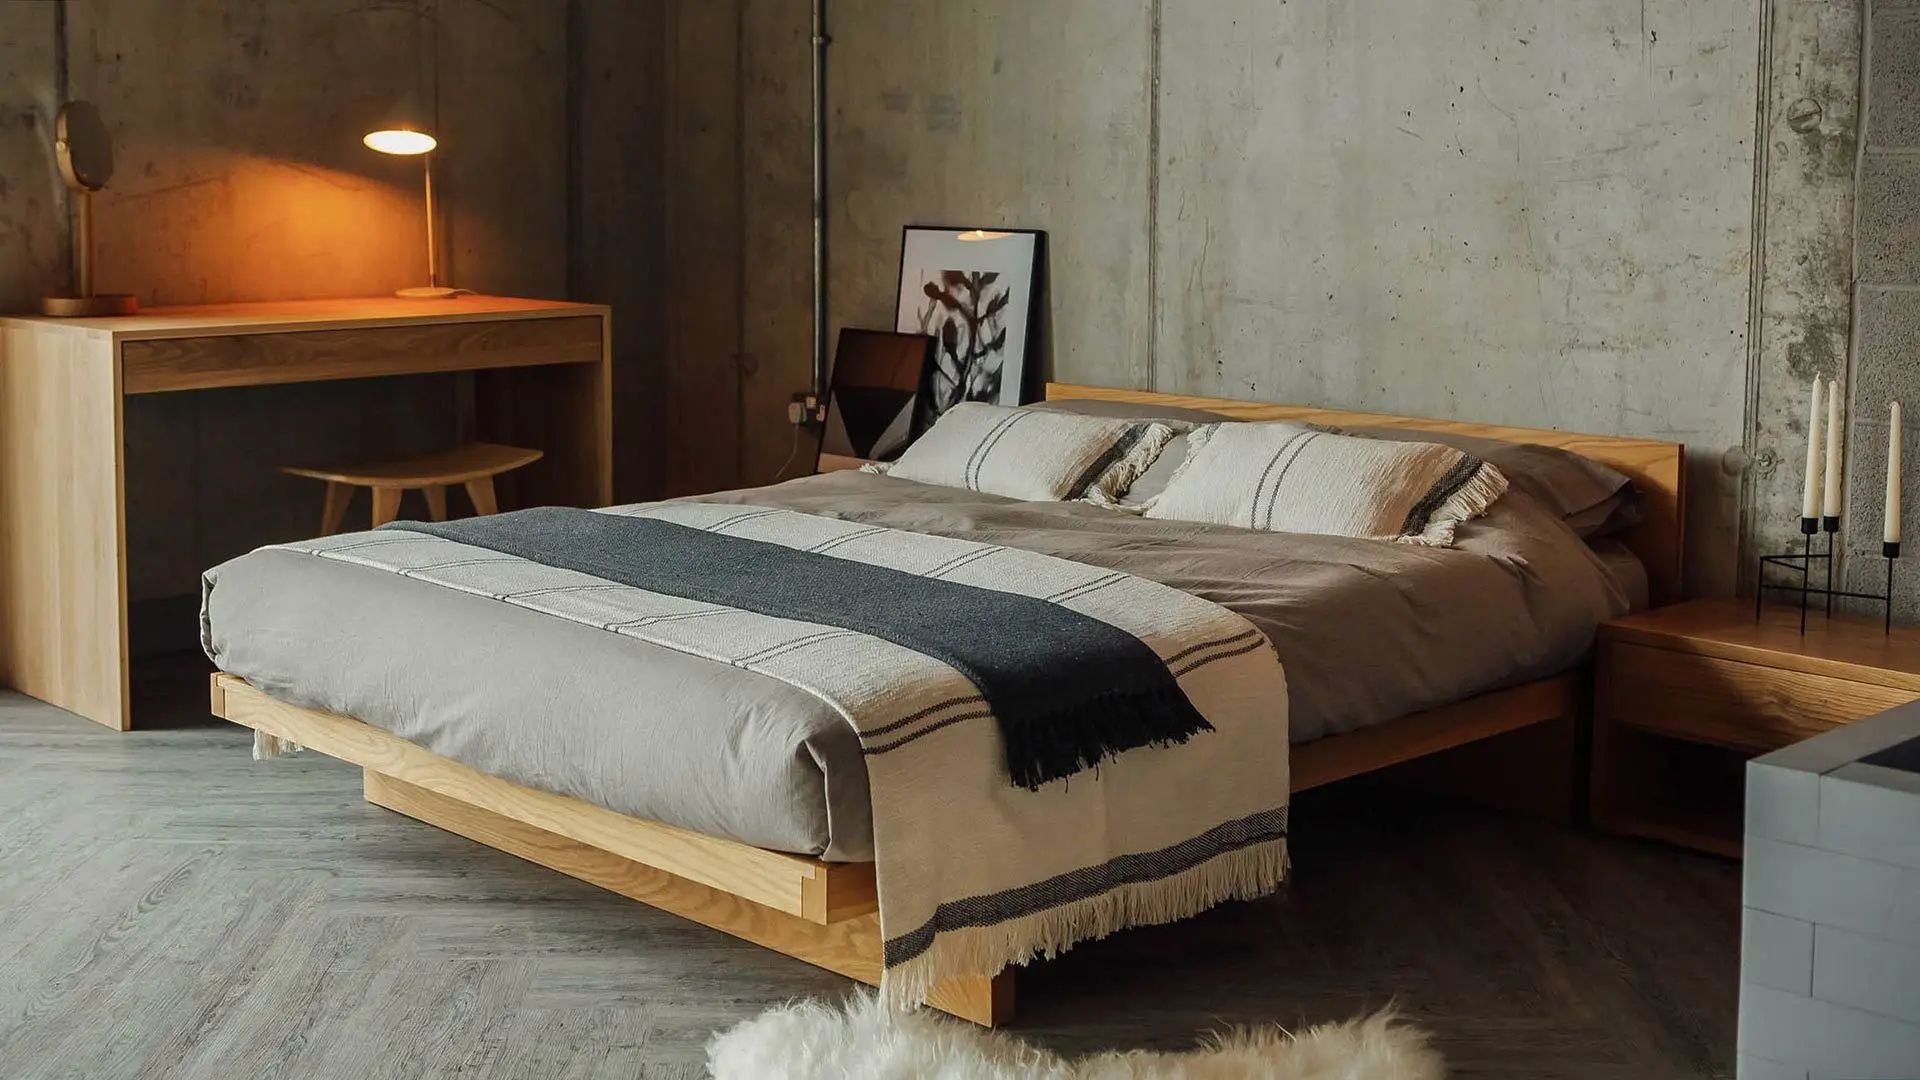 Thi công giường ngủ gỗ Sồi theo phong cách Nhật Bản